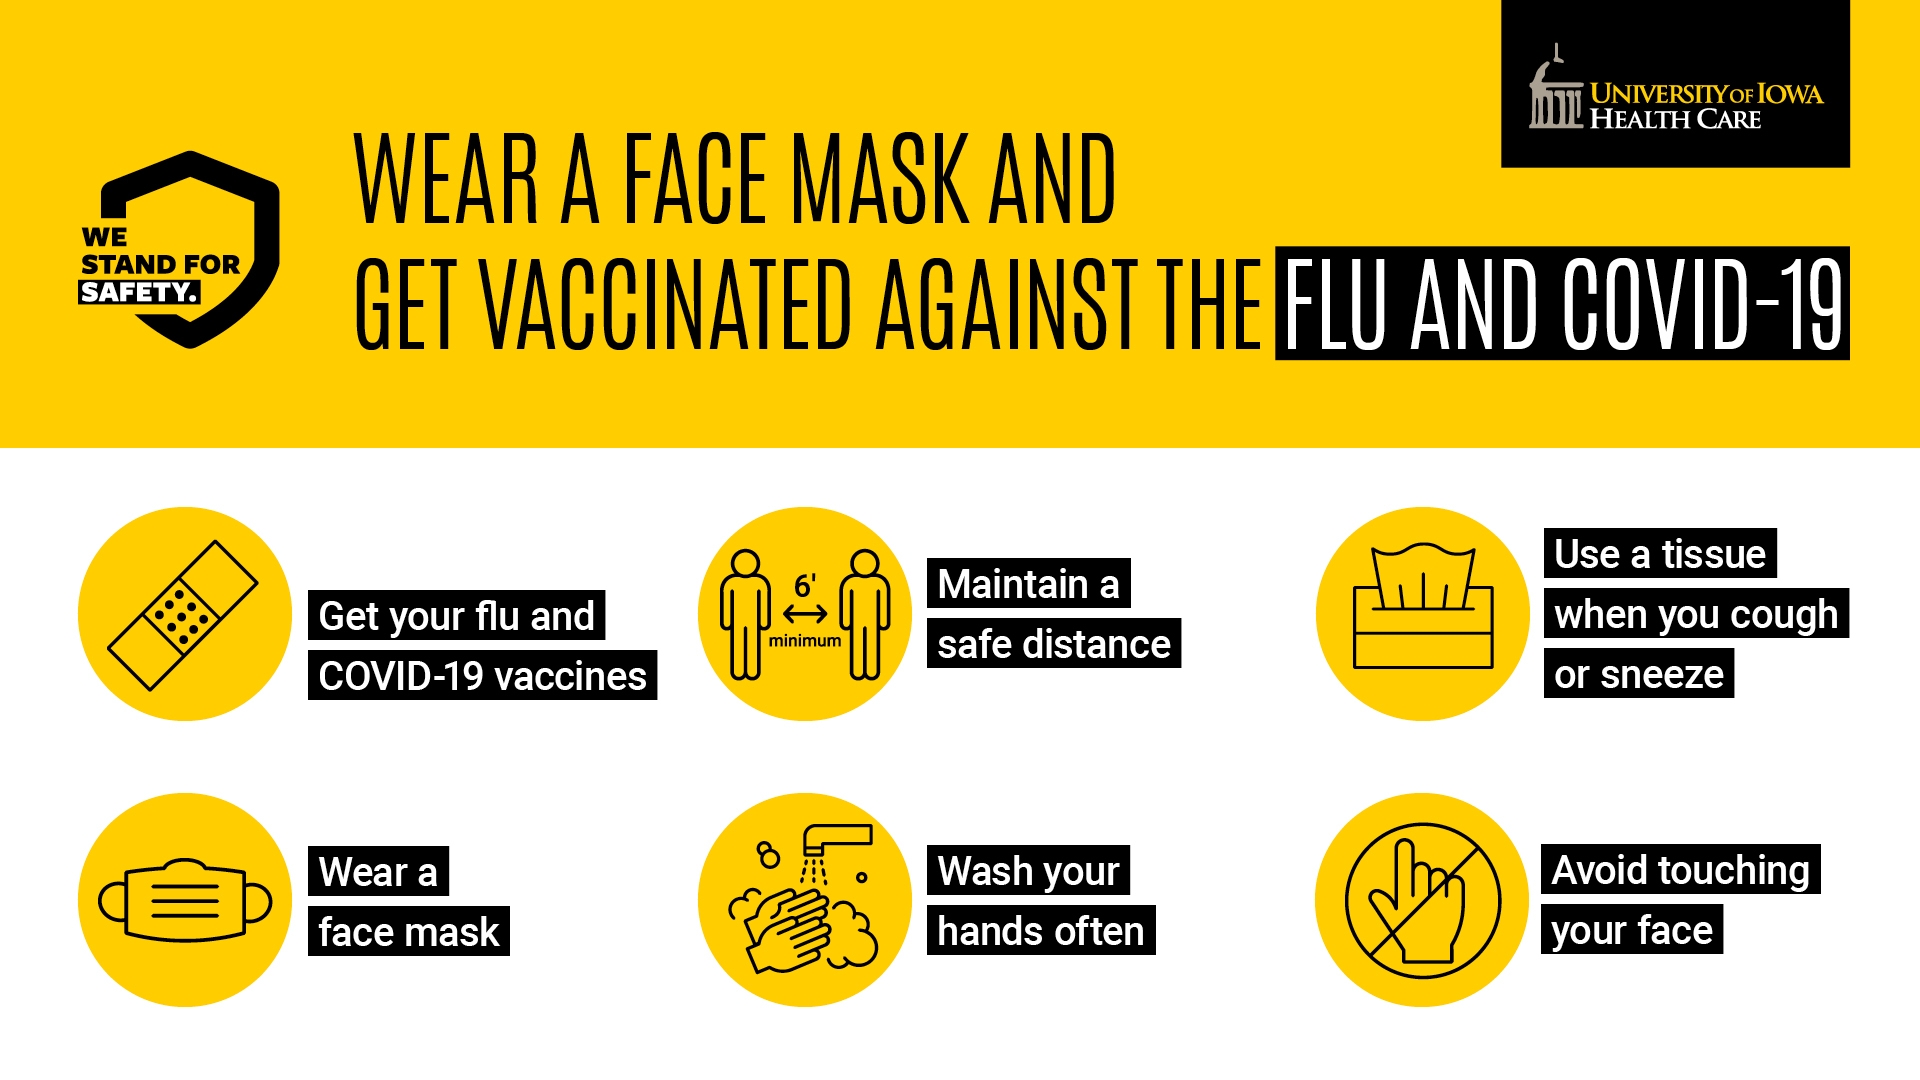 Flu Campaign